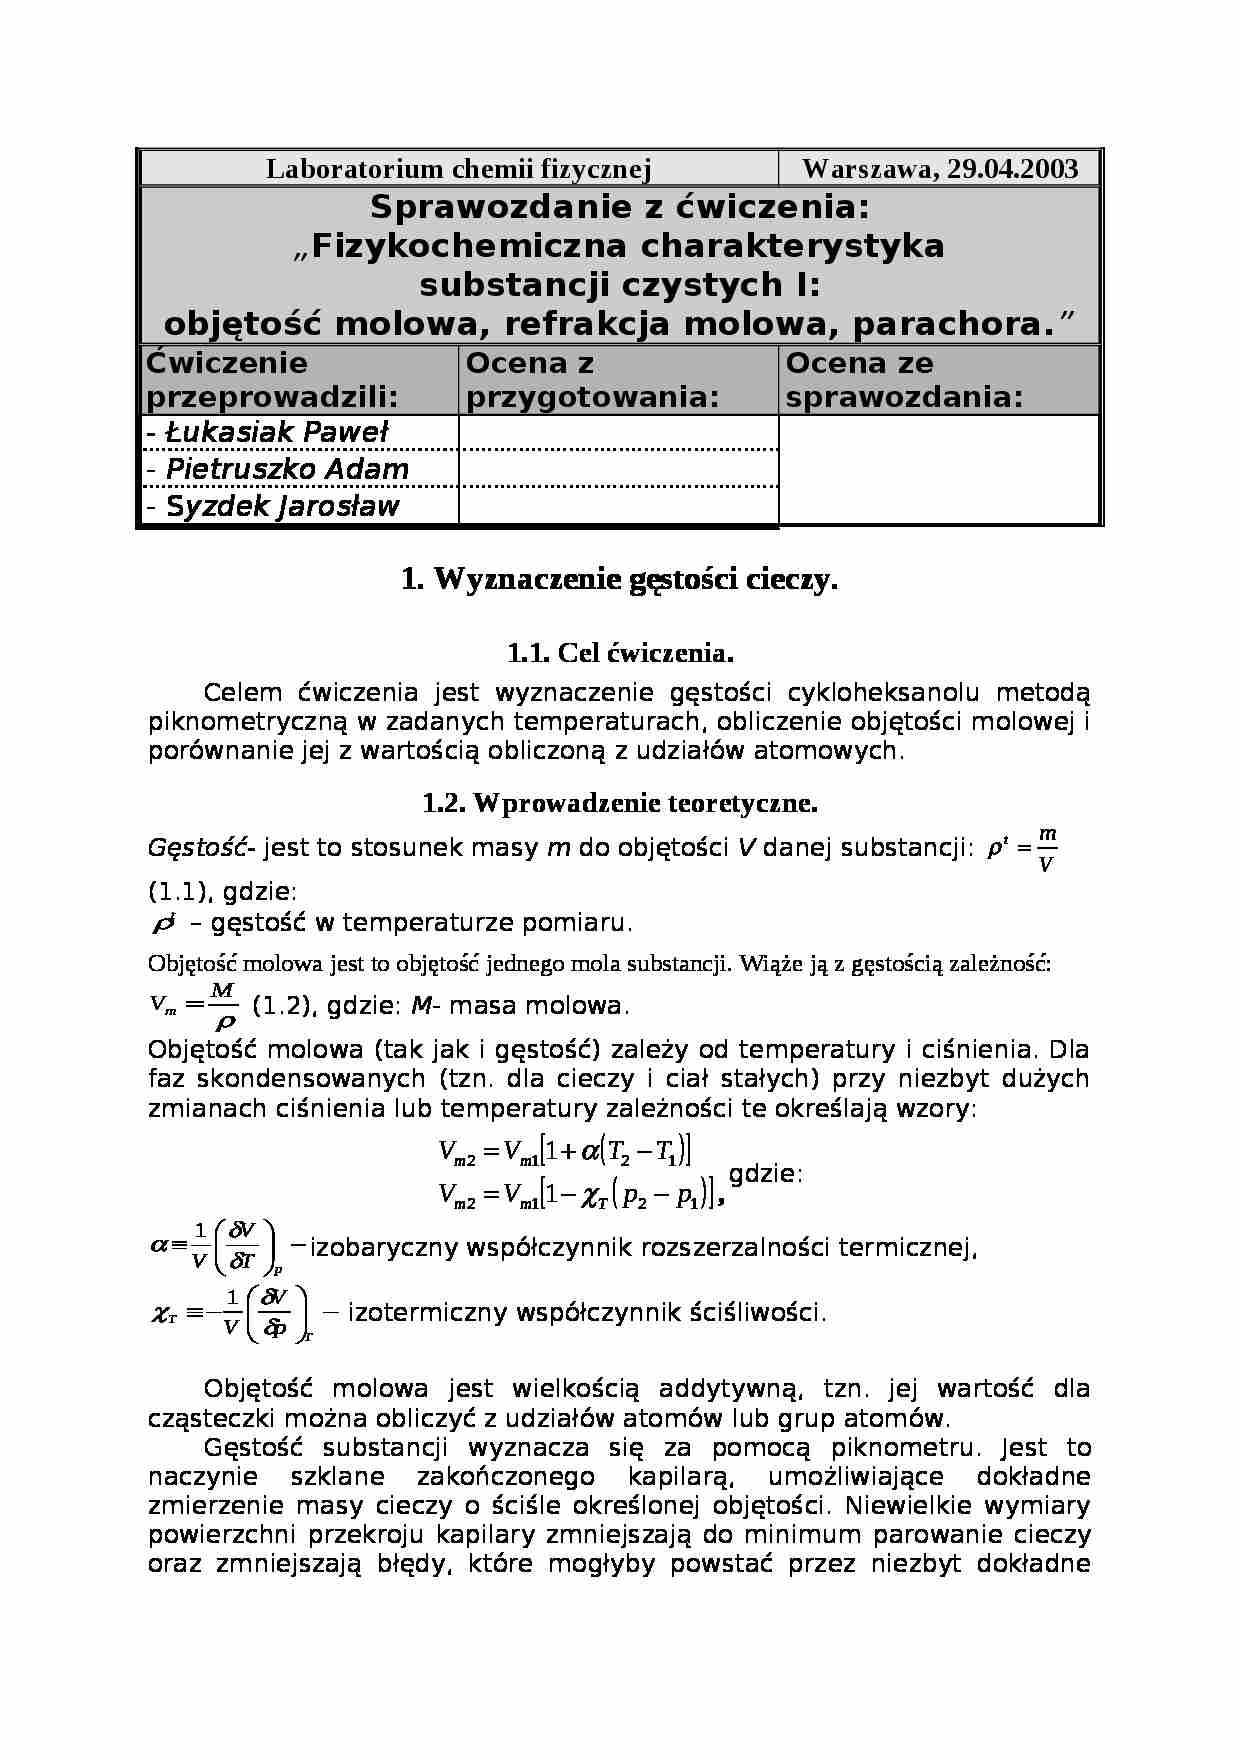 Sprawozdanie - termodynamika i chemia fizyczna - strona 1